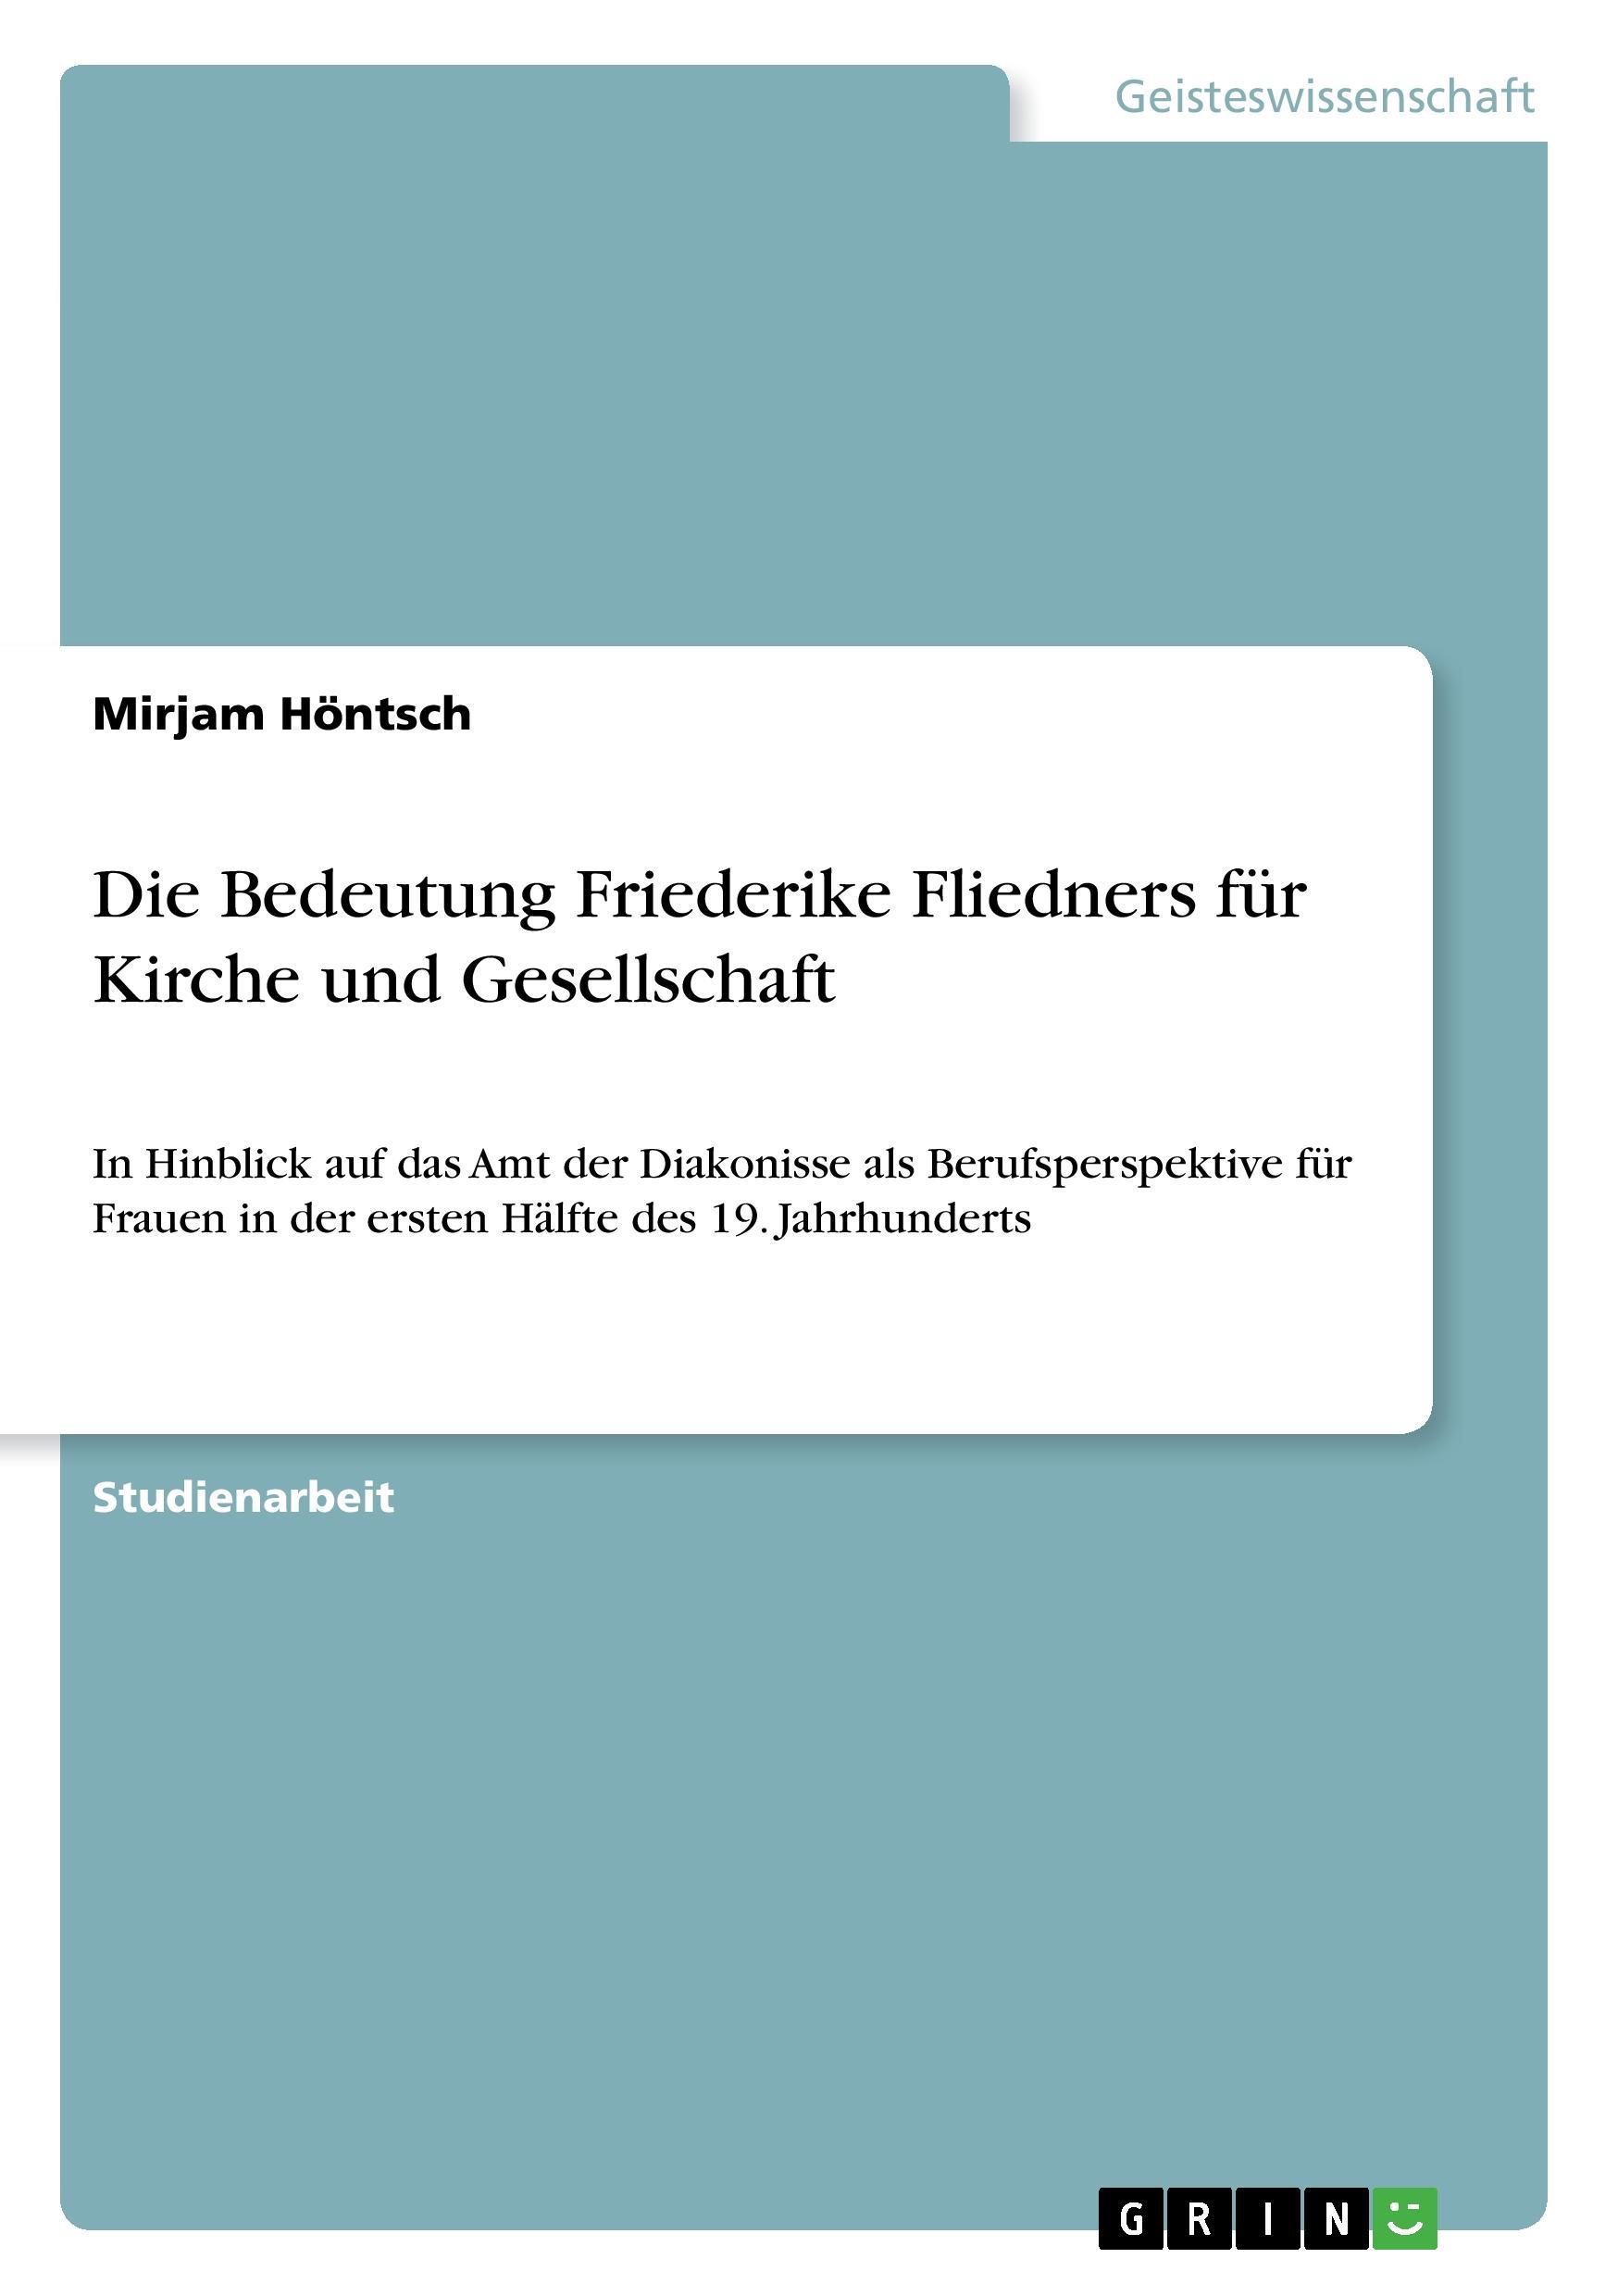 Die Bedeutung Friederike Fliedners fuer Kirche und Gesellschaft - Hoentsch, Mirjam